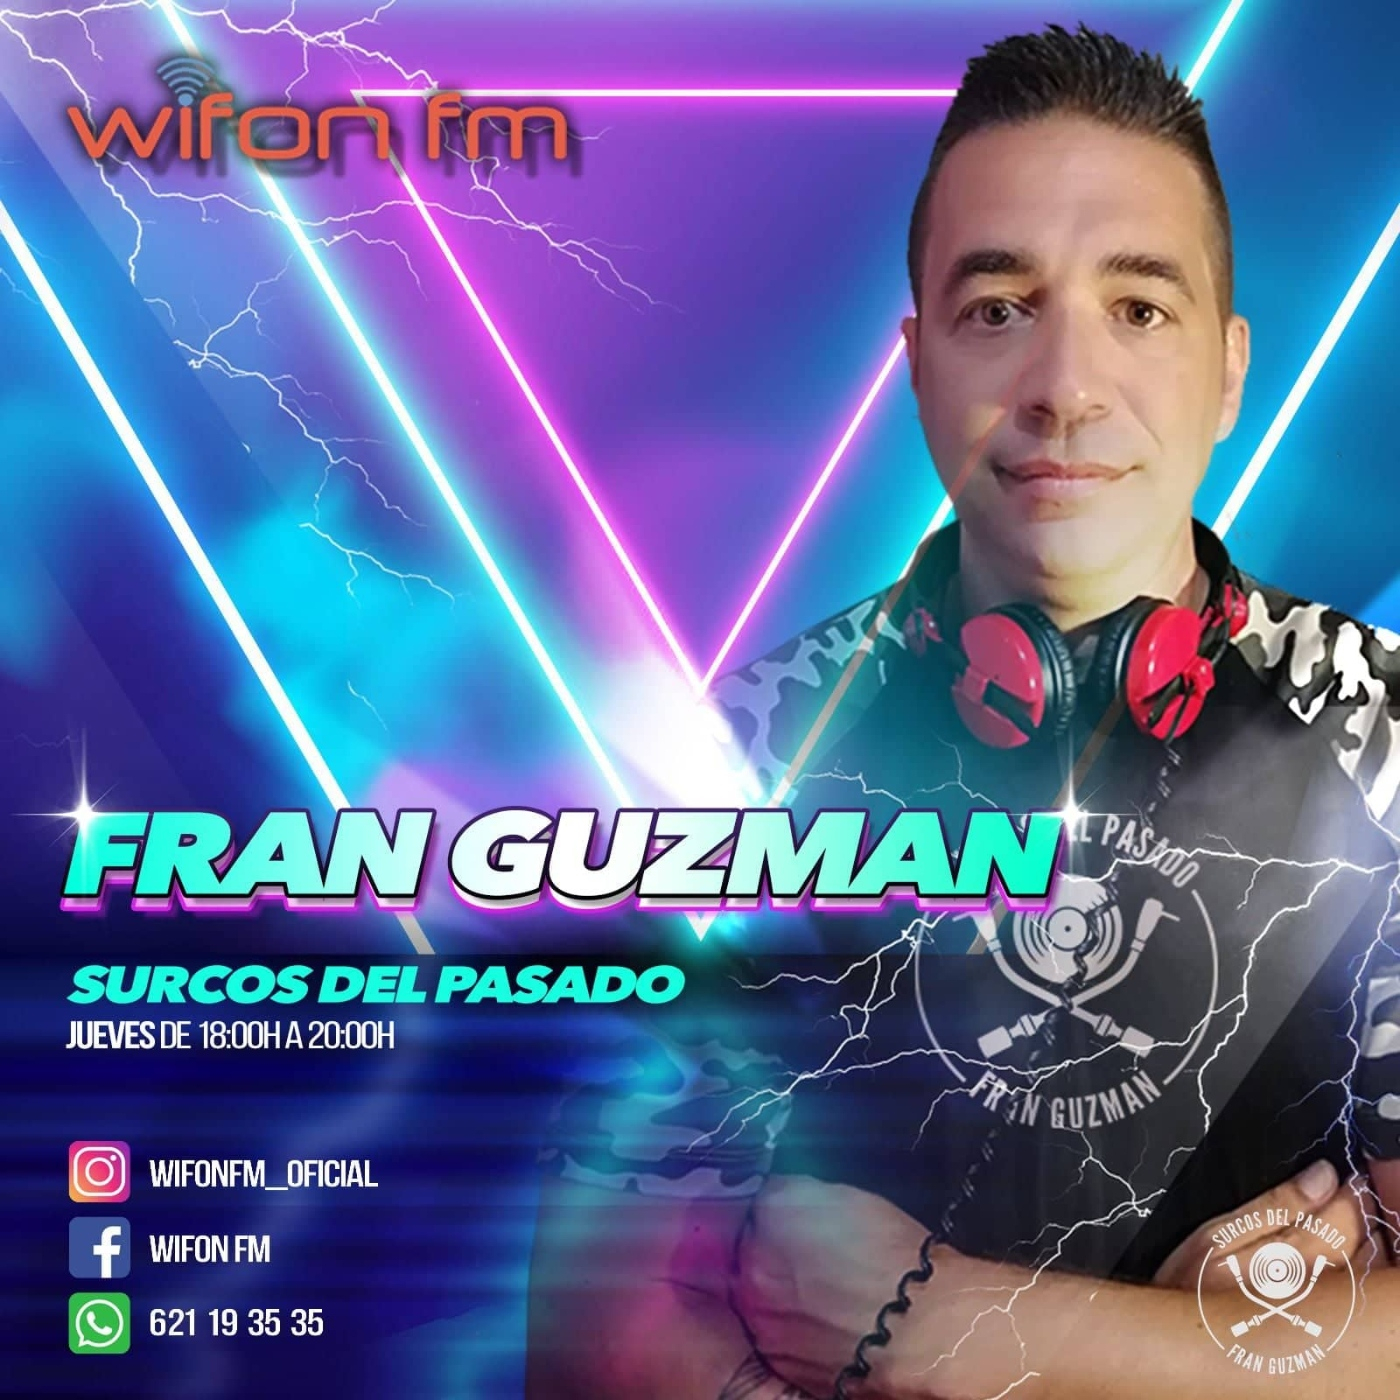 Fran Guzman Surcos del Pasado Wifon Fm T5.12